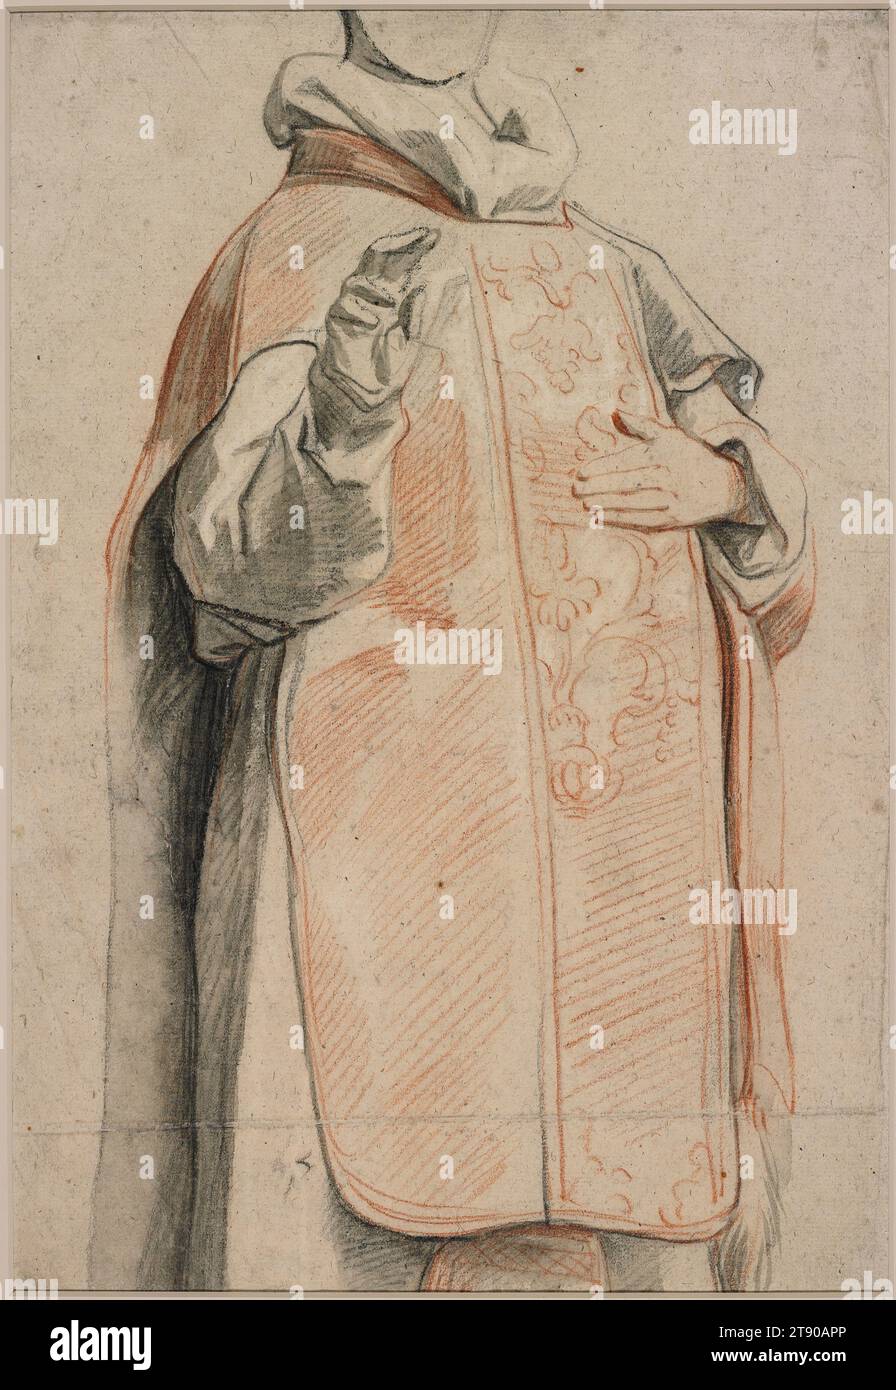 Studie einer Figur im Priestergewand, um 1650, Jacob Jordaens, Flämisch, 1593 - 1678, 15/16 x 1/16 Zoll (37,94 x 25,56 cm) (ca.)20 1/2 x 24 15/16 Zoll (52,07 x 63,34 cm) (Matte), schwarz-rote Kreide, geölte Holzkohle, graue Waschung, weiß erhöht, Belgien, im 17. Jahrhundert war Jacob Jordaens der führende Maler in Antwerpen in der Generation nach Rubens. Er wurde stark von dem älteren Künstler beeinflusst und arbeitete gelegentlich für ihn. Obwohl er heute vor allem für seine skurrilen Genrebilder bekannt ist, malte er auch religiöse, historische, mythologische und allegorische Werke. Stockfoto